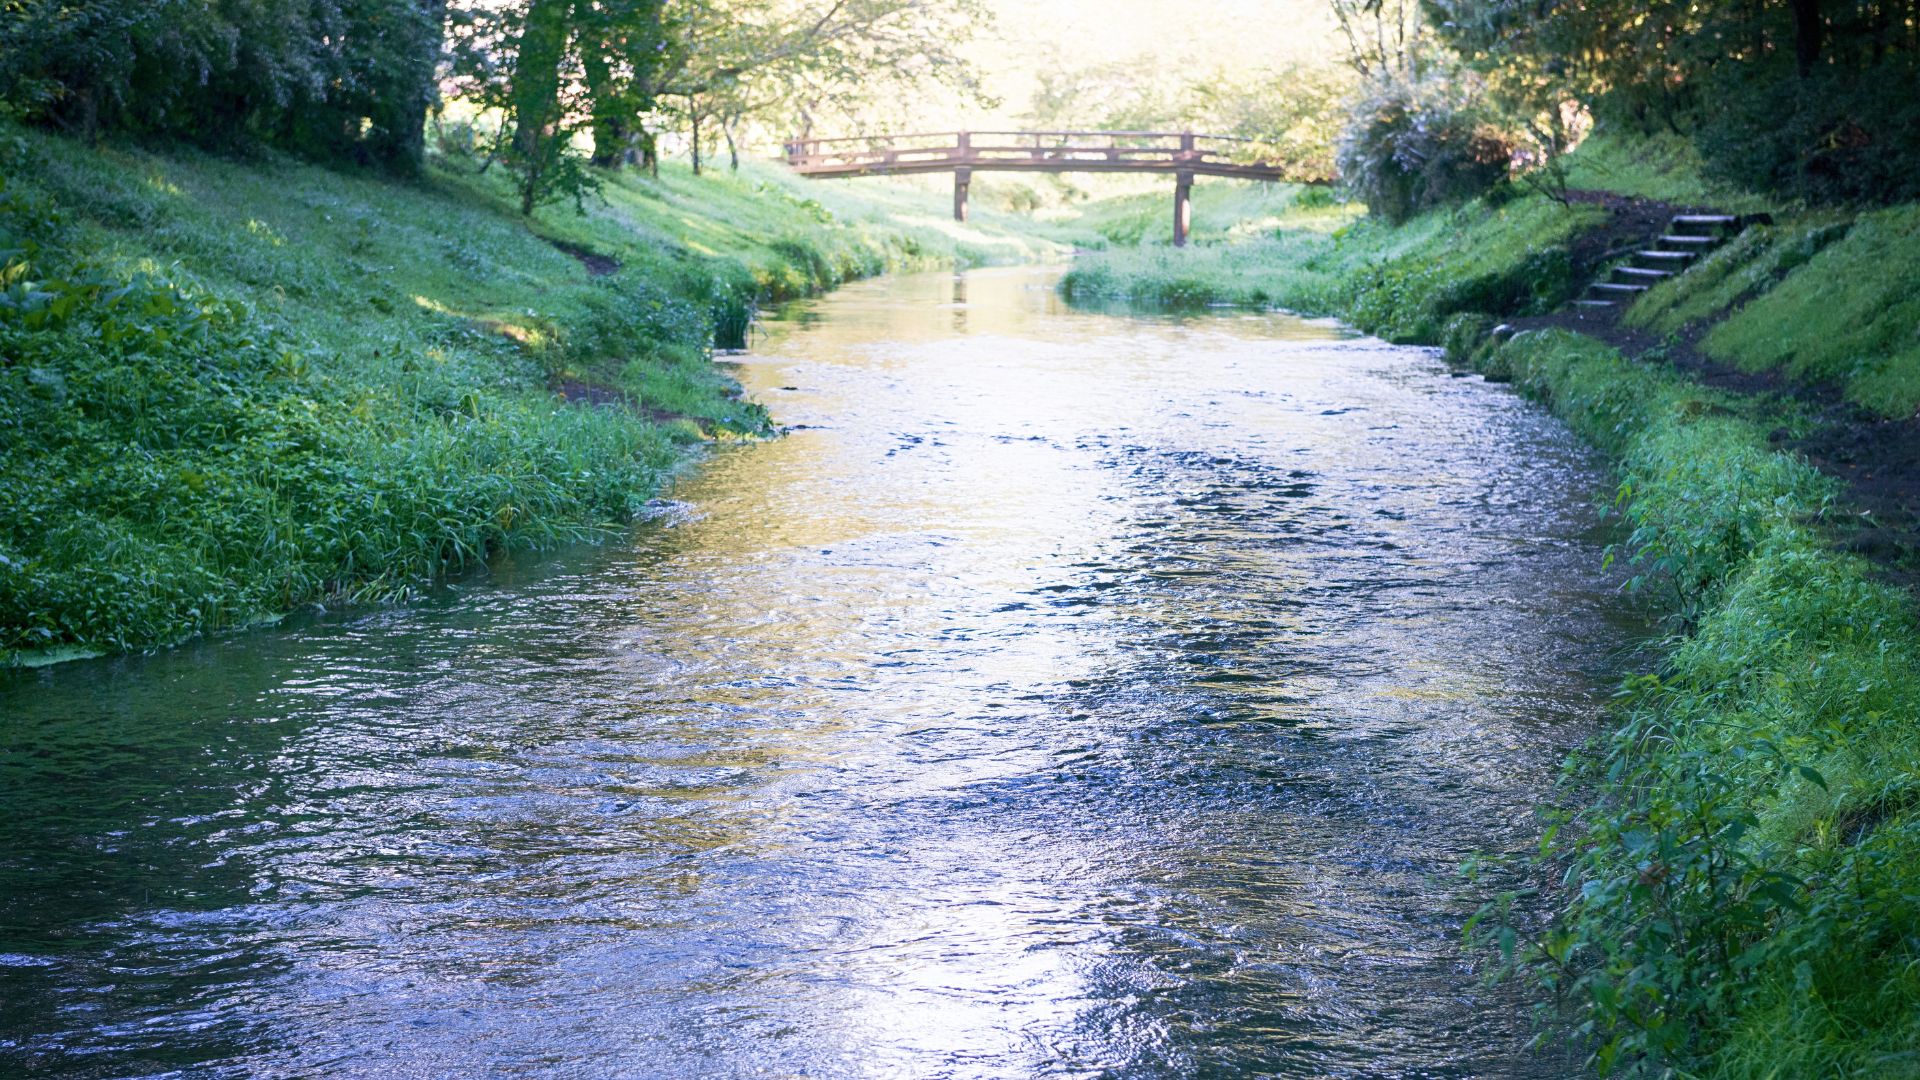 Um pequeno rio repleto de água limpa. Às margens, gramados densos.